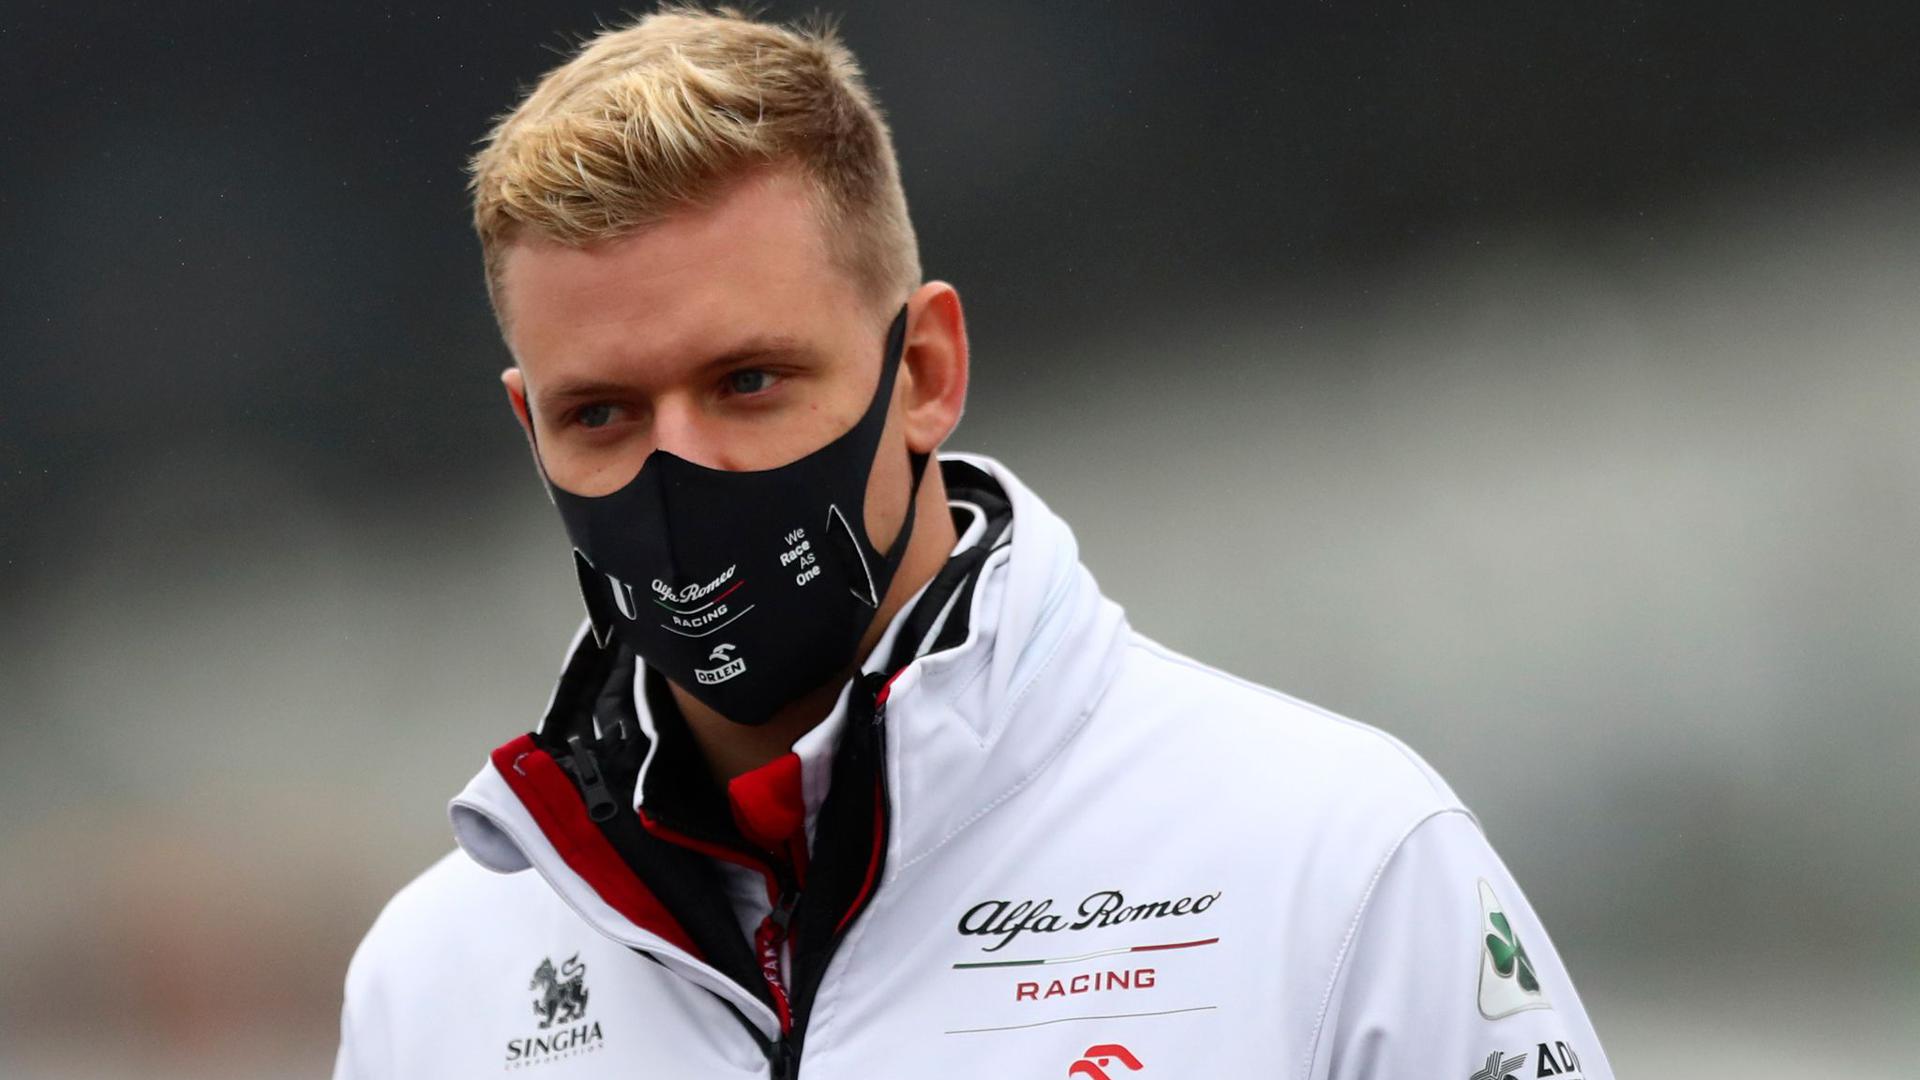 Verabschiedet sich Mick Schumacher mit dem Formel-2-Gesamtsieg in die Königsklasse?